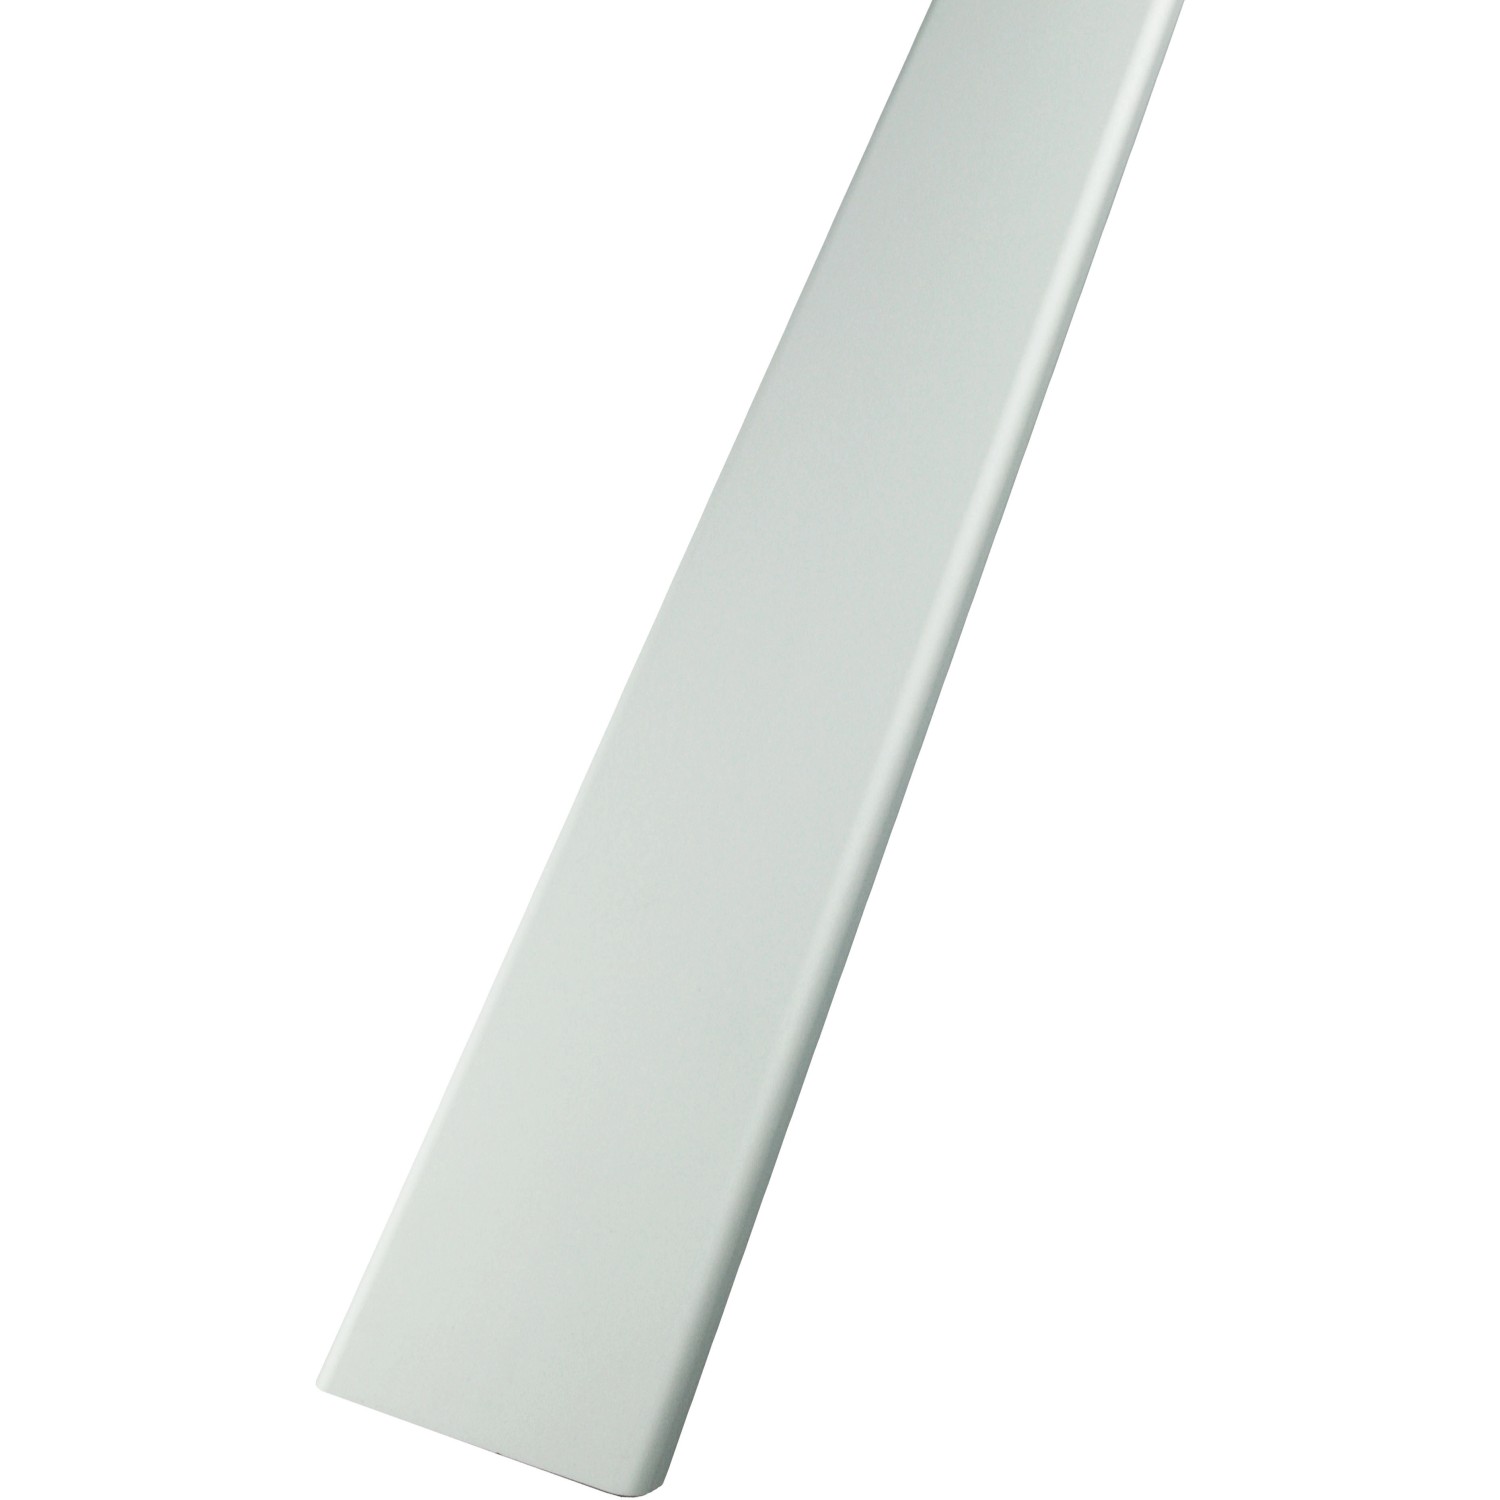 Abschlussprofil Alu satiniert 1,25 m für 8 cm Glassteine von Fuchs Design